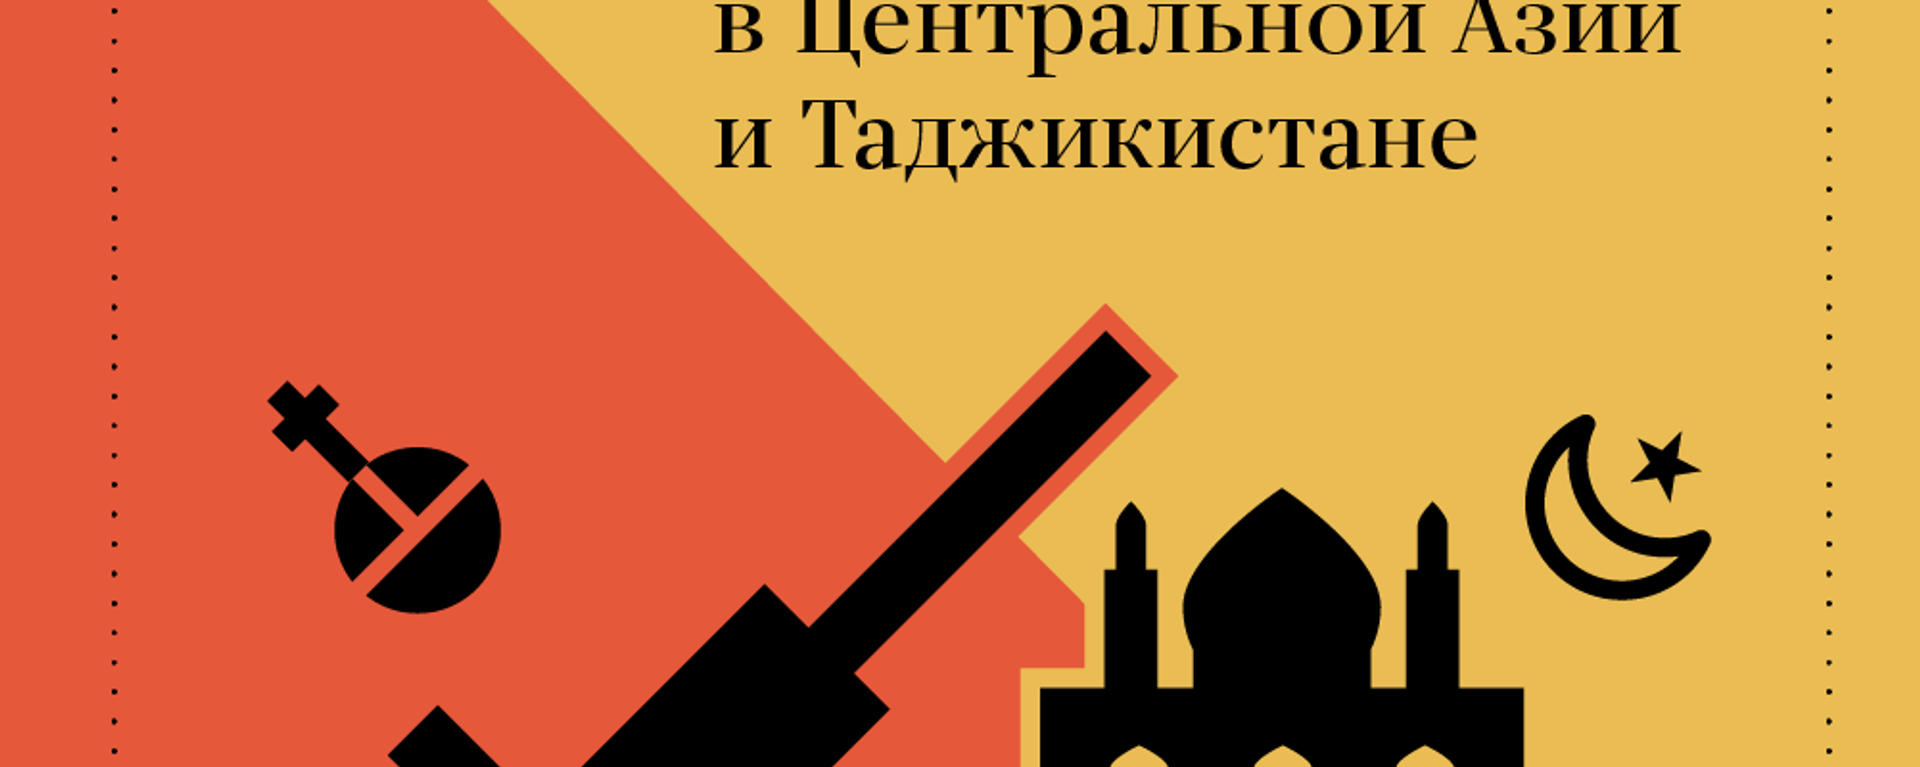 Революция 1917 года в Центральной Азии и Таджикистане - Sputnik Таджикистан, 1920, 22.02.2018